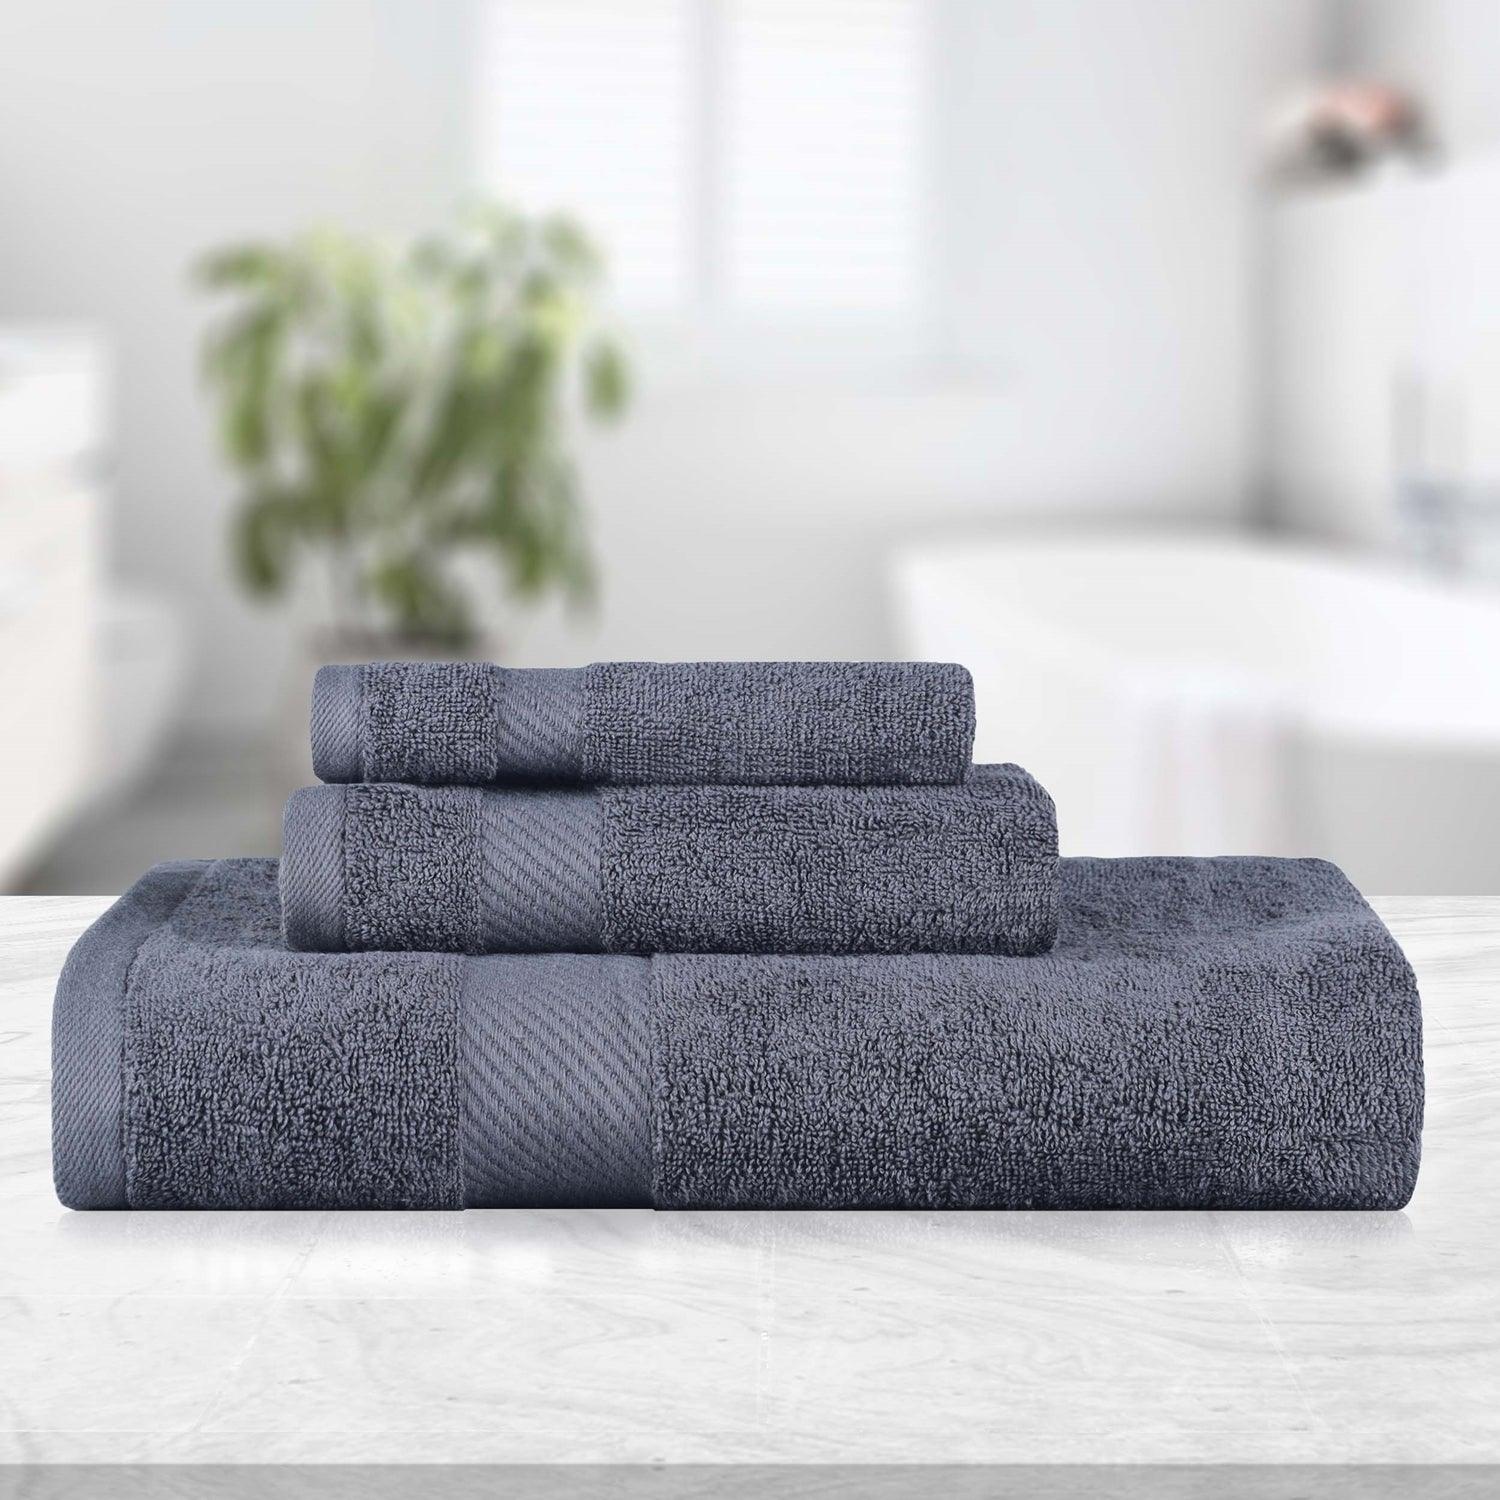 10pc Bath Towel Set (Your Choice Color)